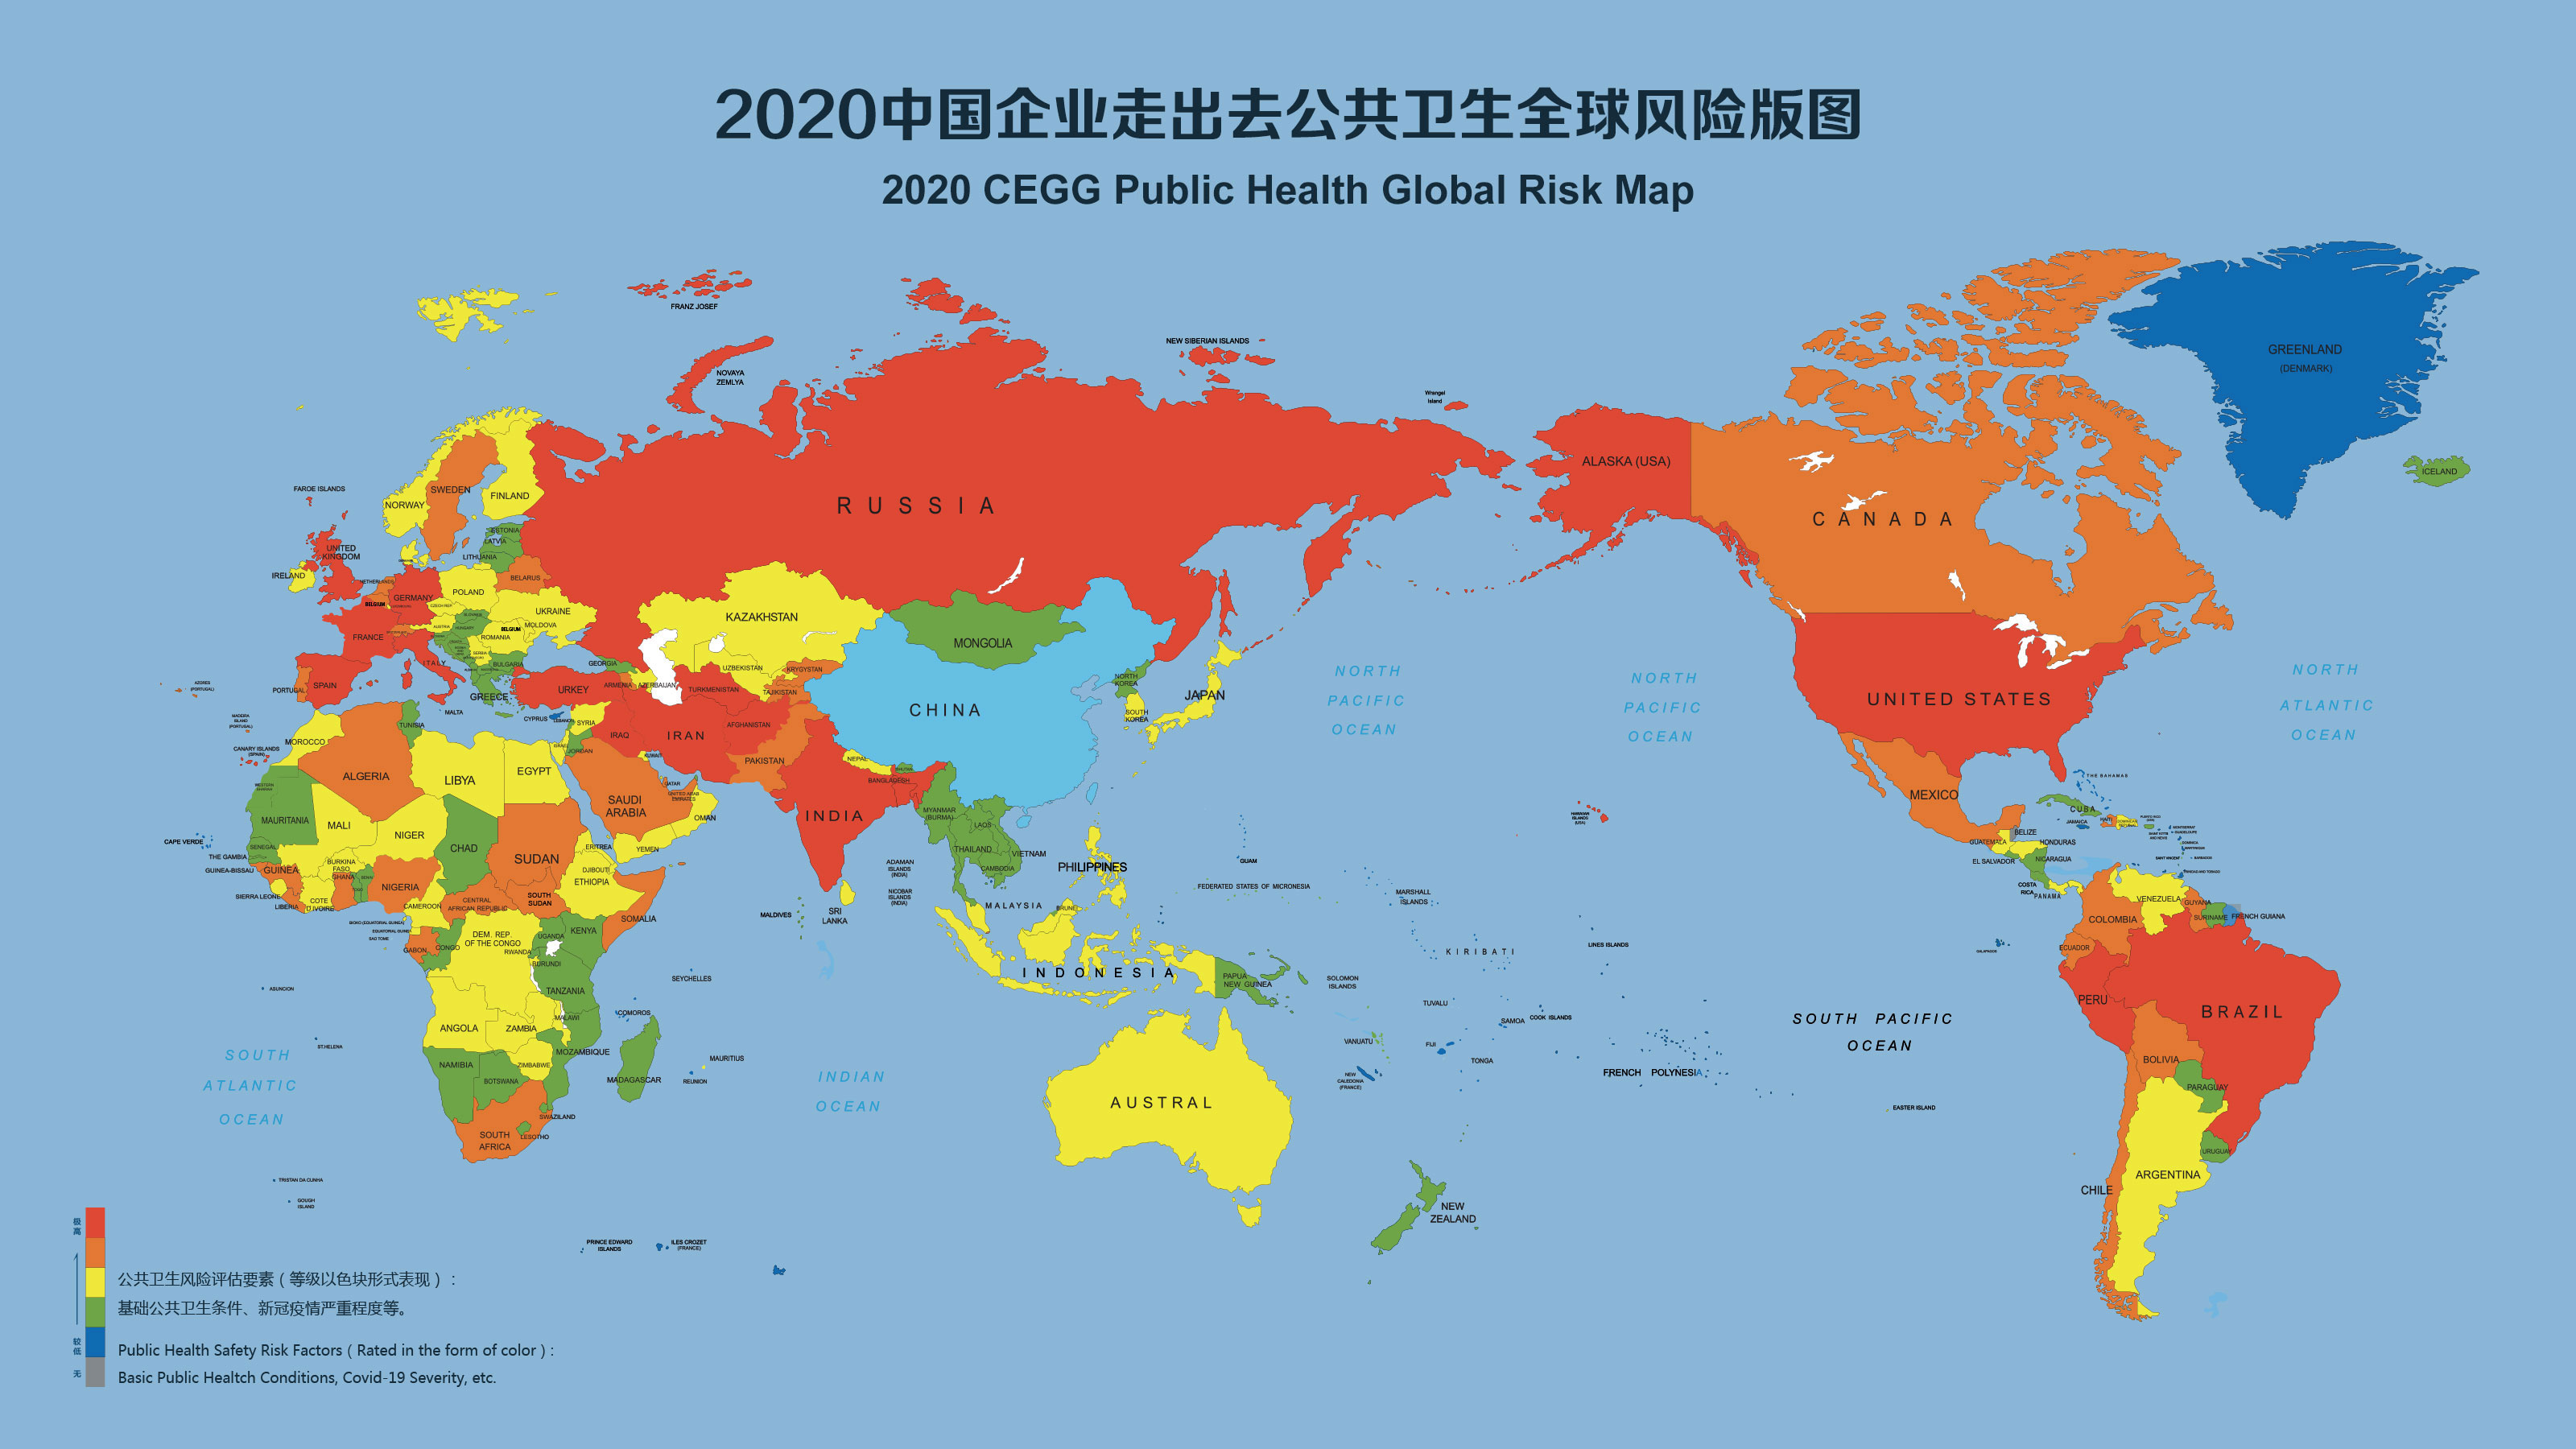 m2020中國企業走出去公共衛生全球風險版圖nC北京傳真